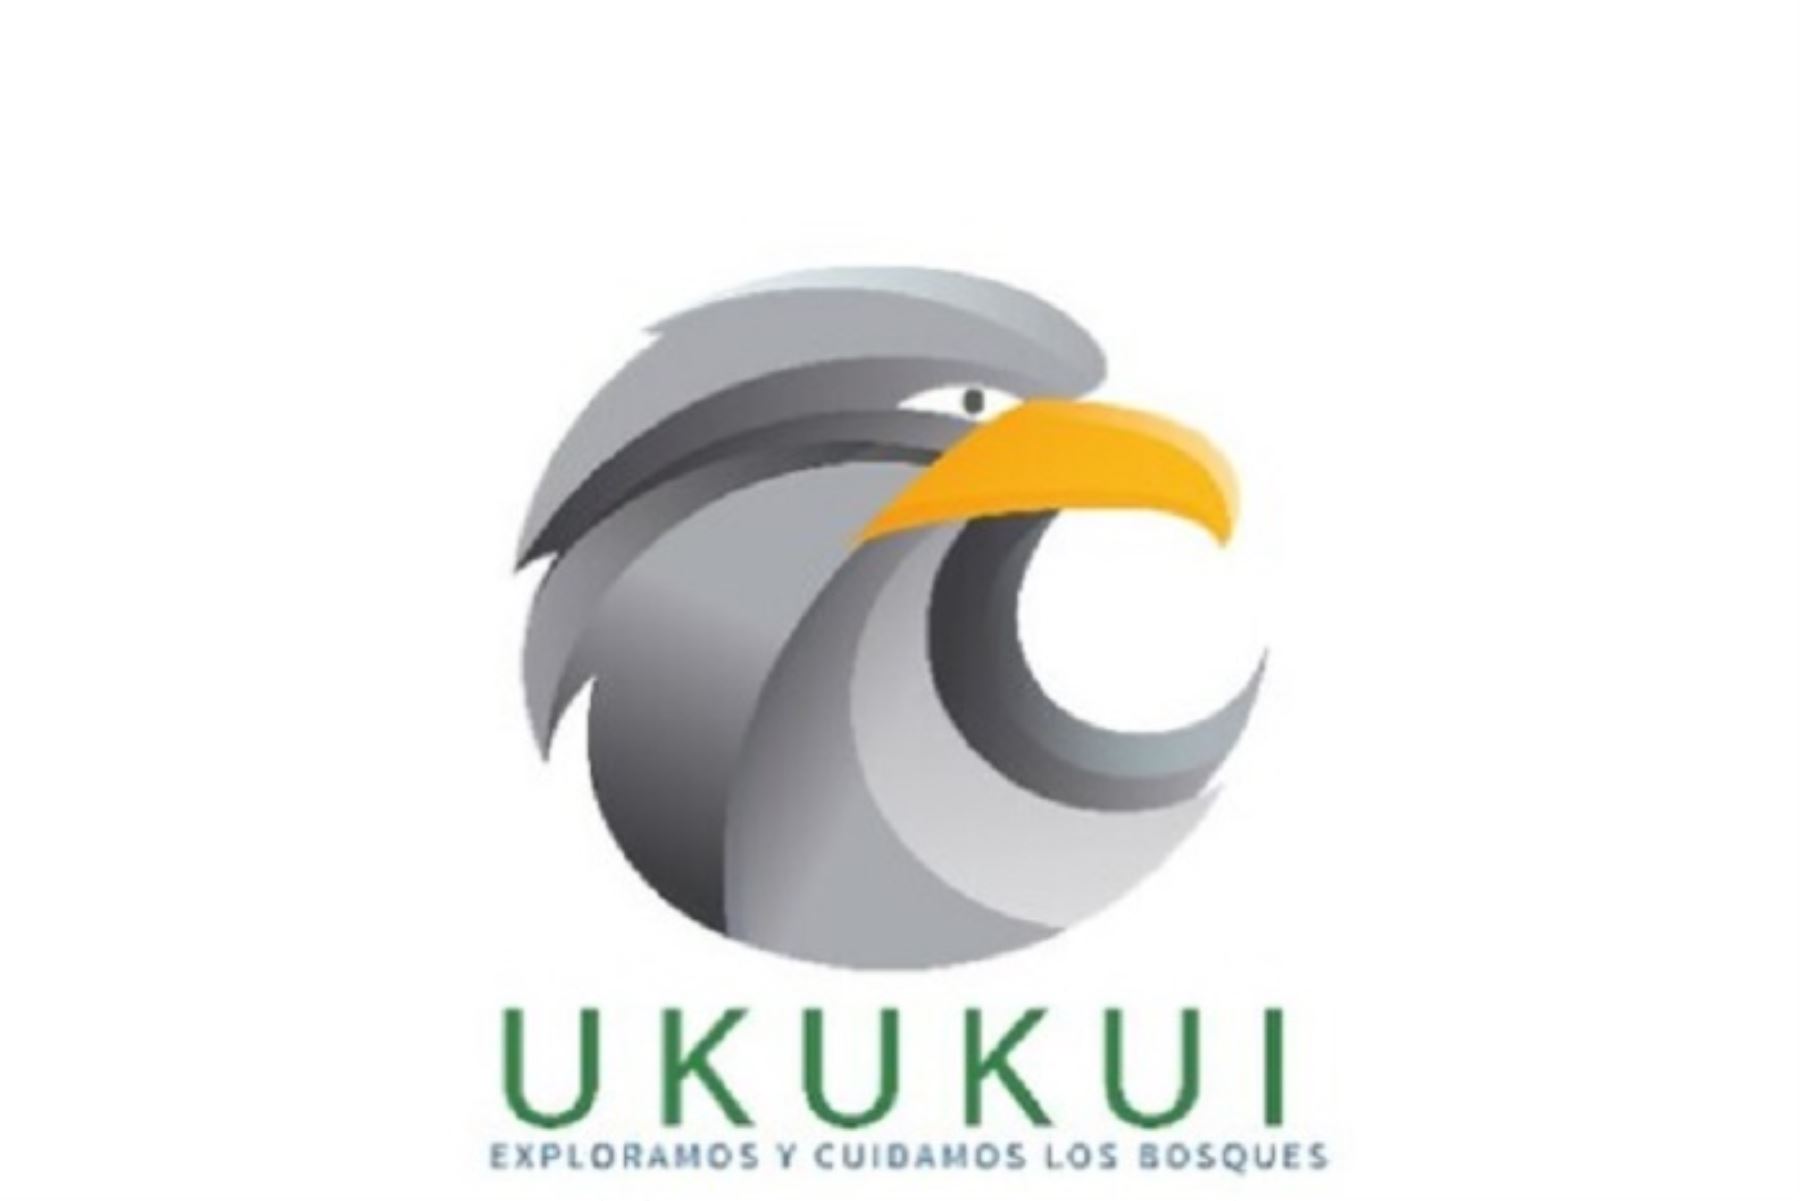 Ukukui es una palabra awajún que significa águila. Esta denominación alude a que gracias a la herramienta digital será posible “volar” por encima de nuestra Amazonía para monitorear la situación actual de los bosques.